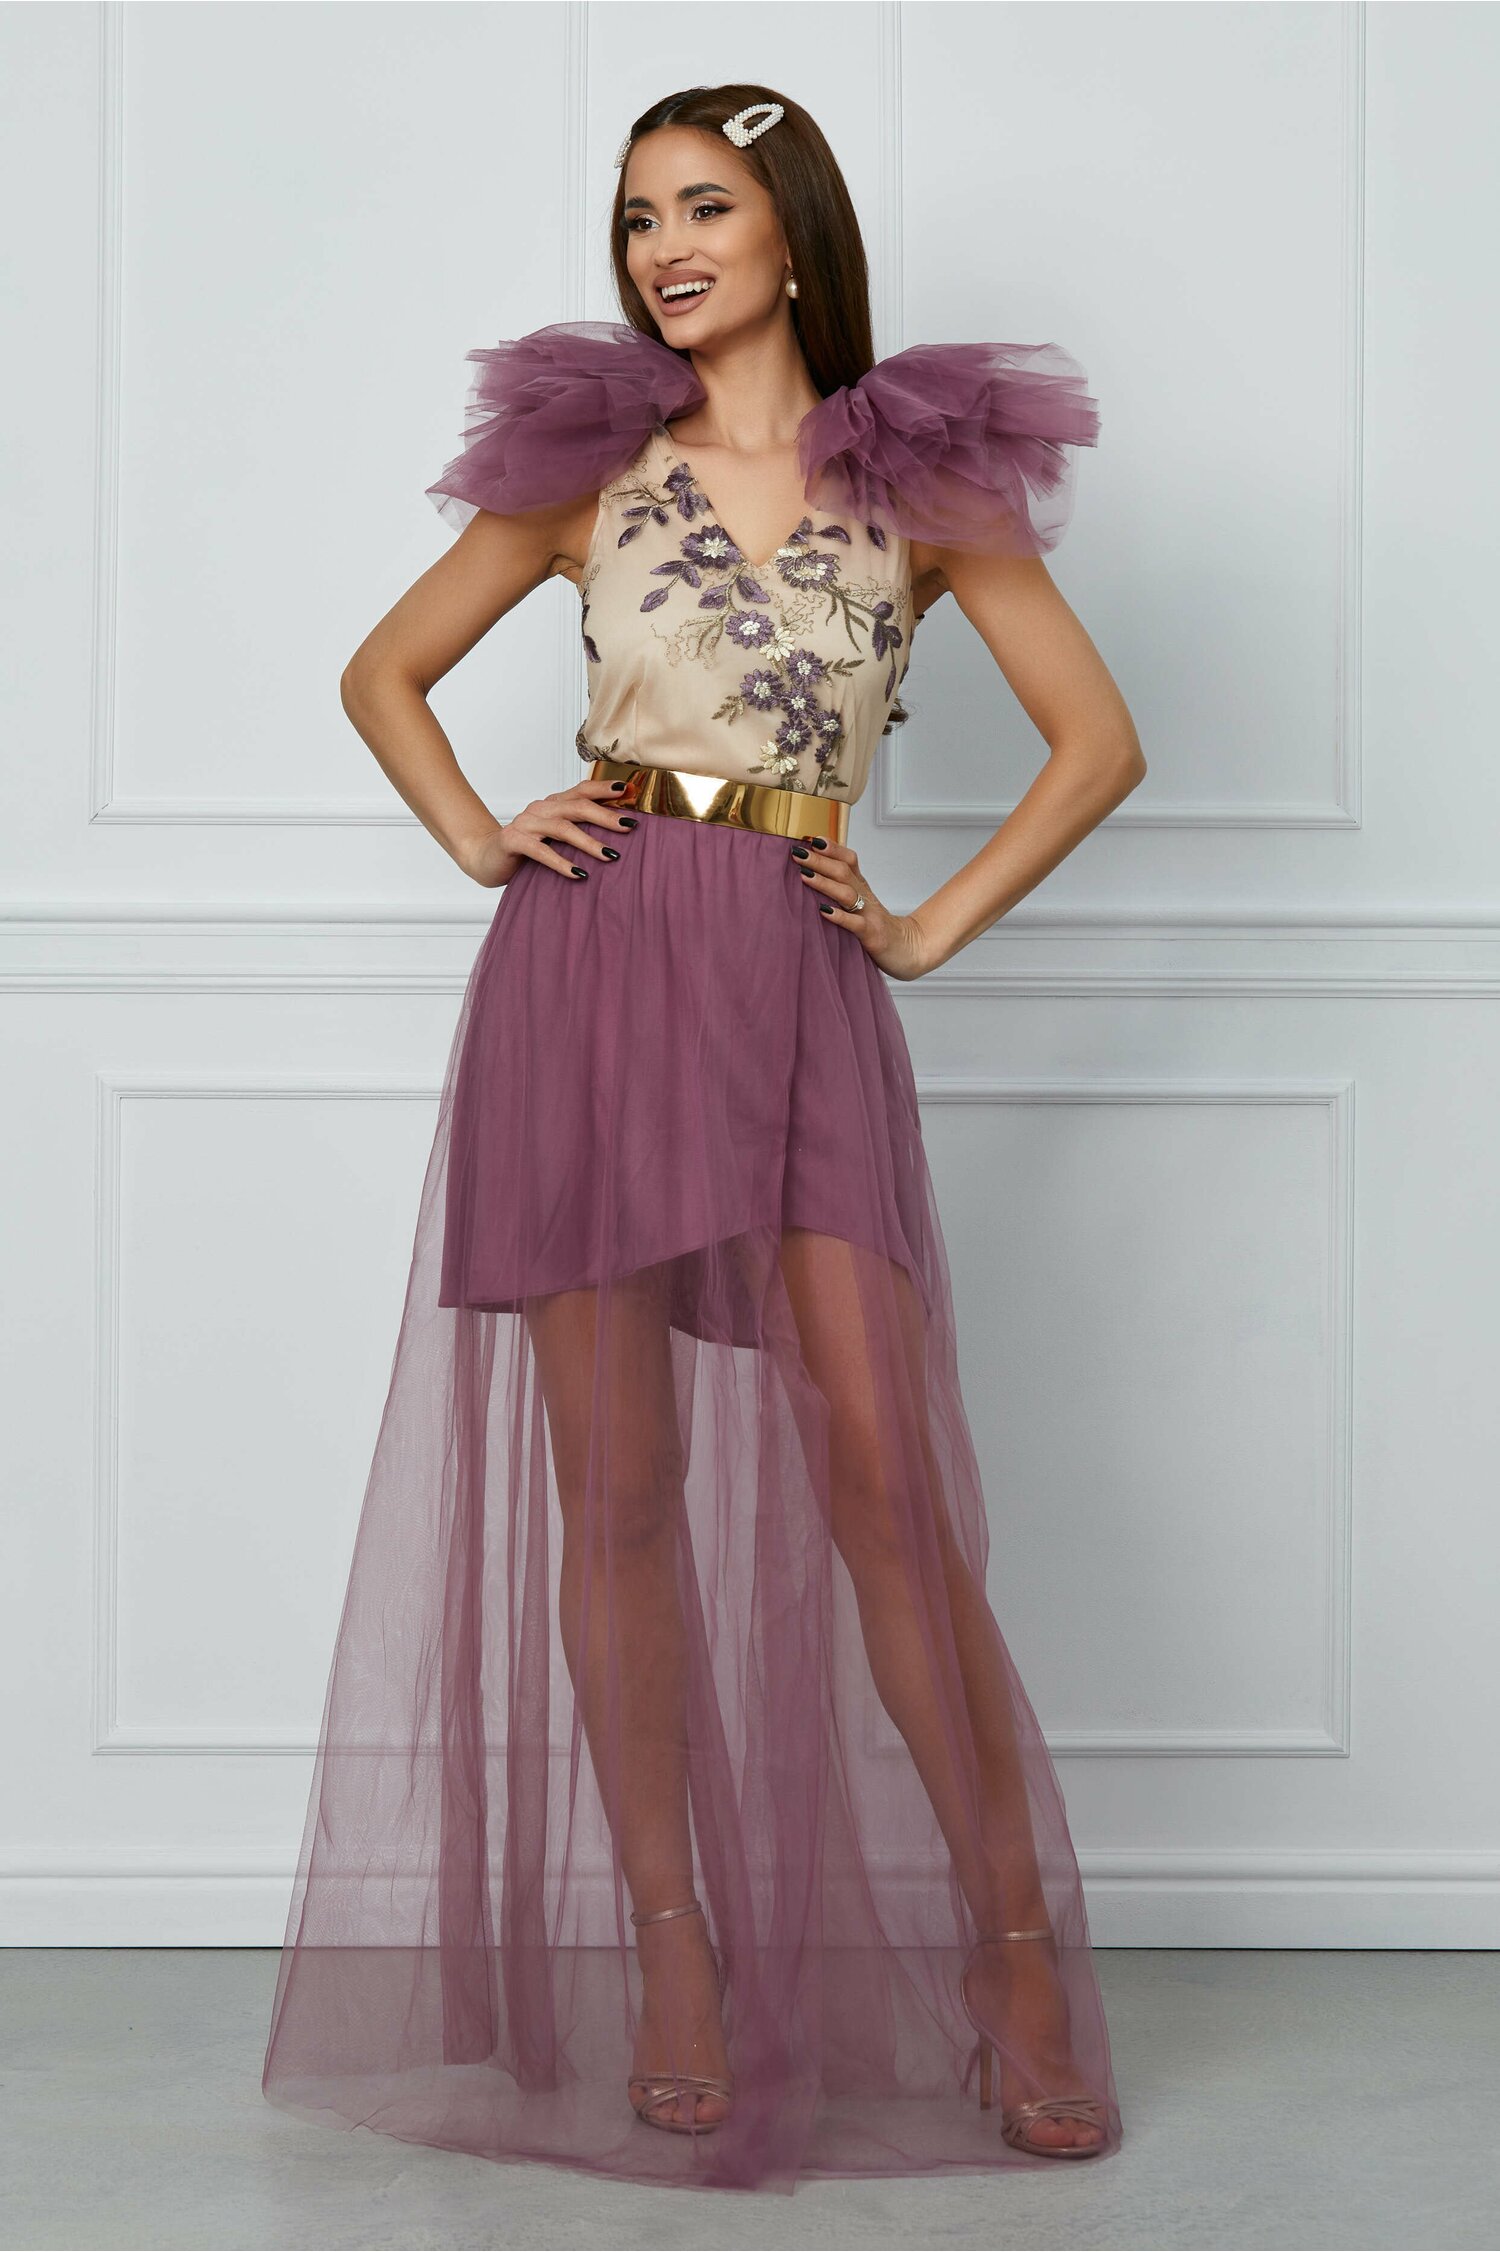 Rochie Dy Fashion Milena lila din tulle cu broderie la bust 2022 ❤️ Pret Super dyfashion imagine noua 2022